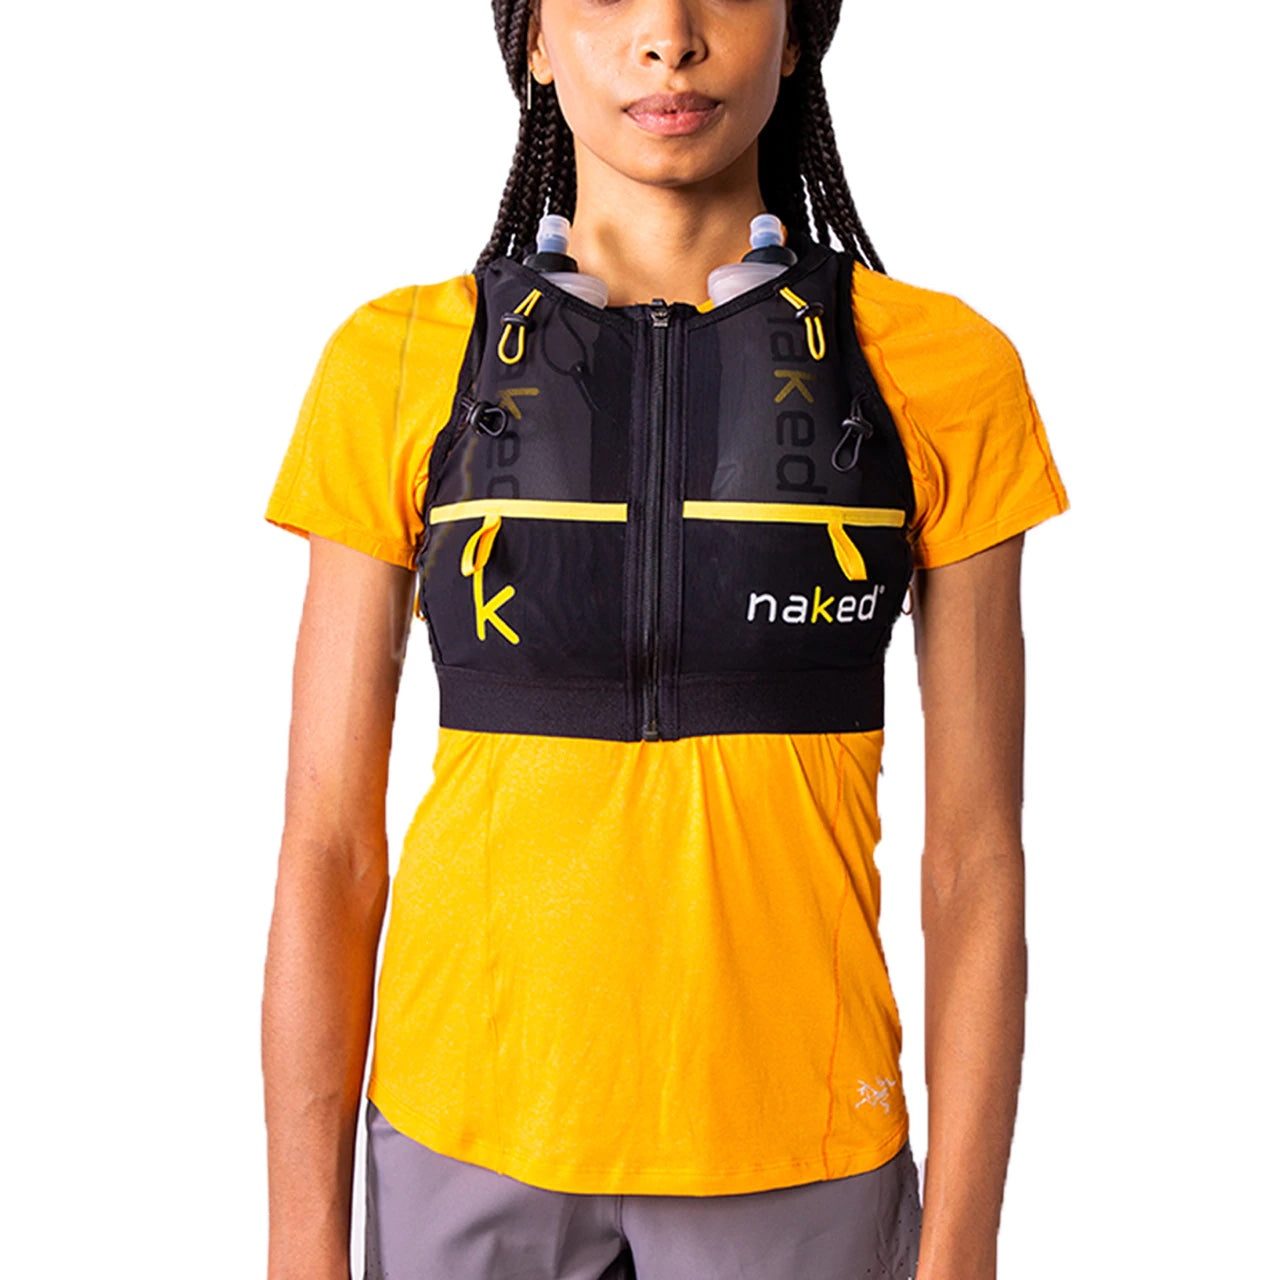 NAKED® High Capacity Running Vest - Women's